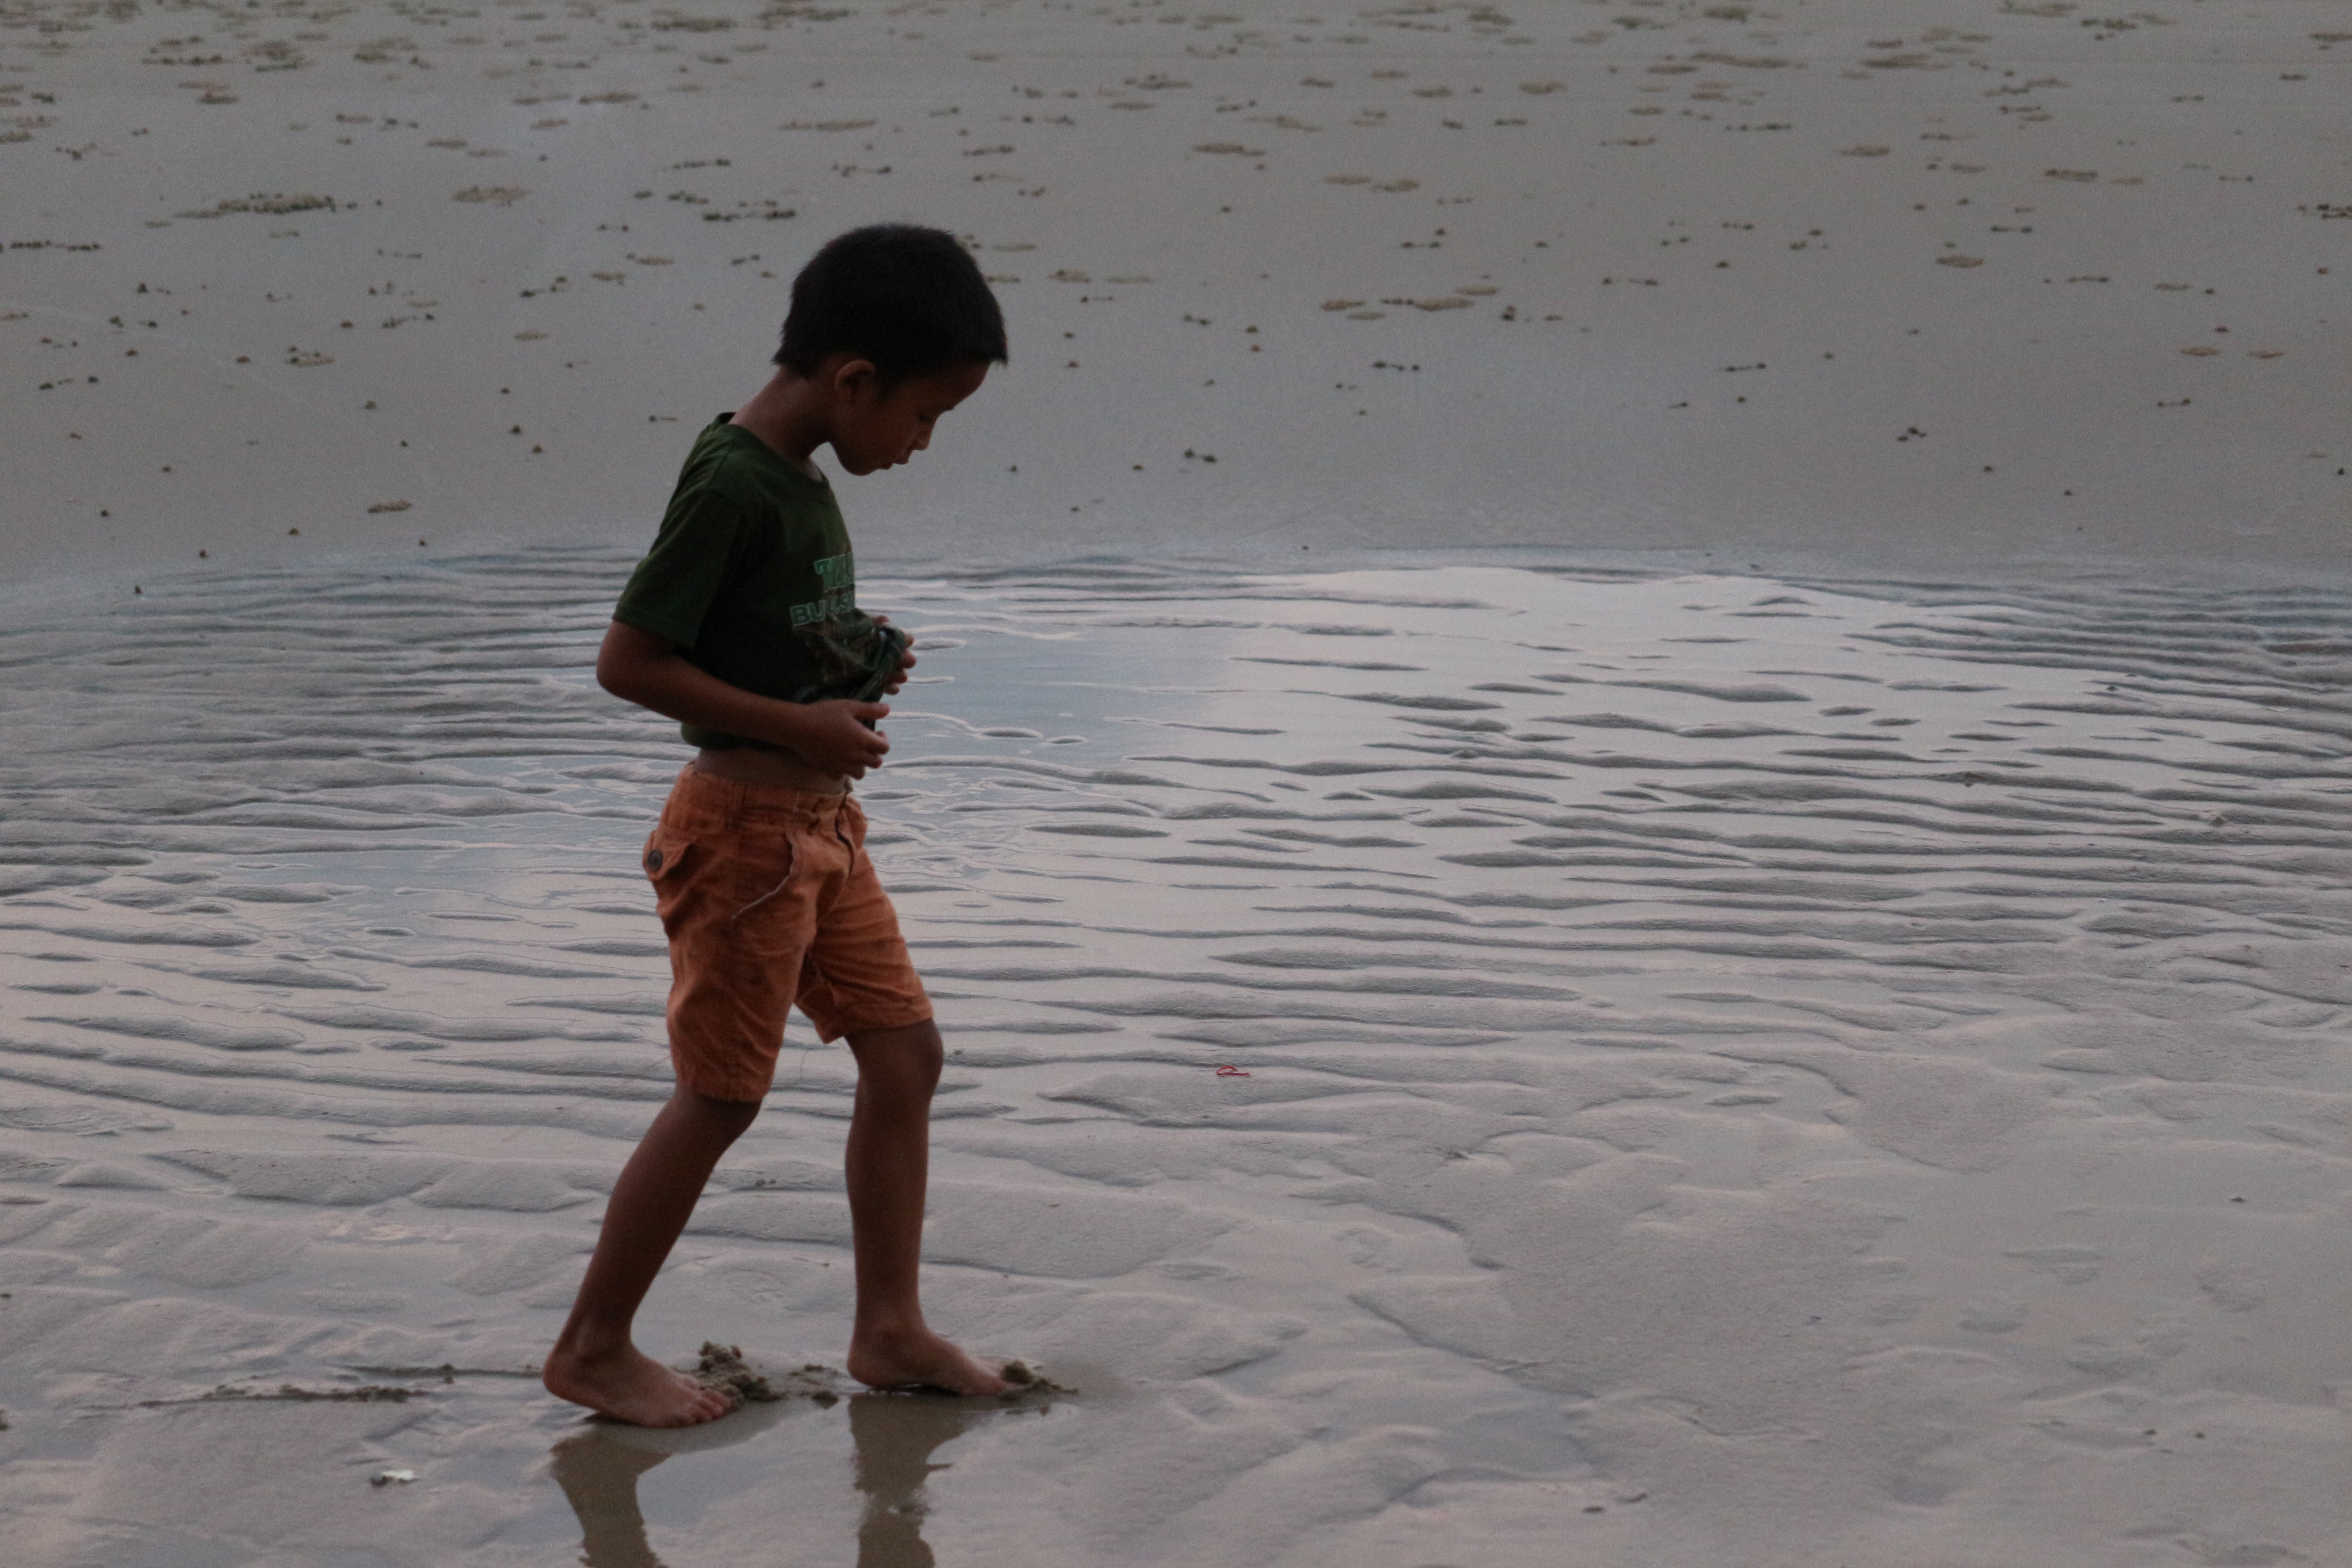 mission humanitaire : enfant jouant sur la plage